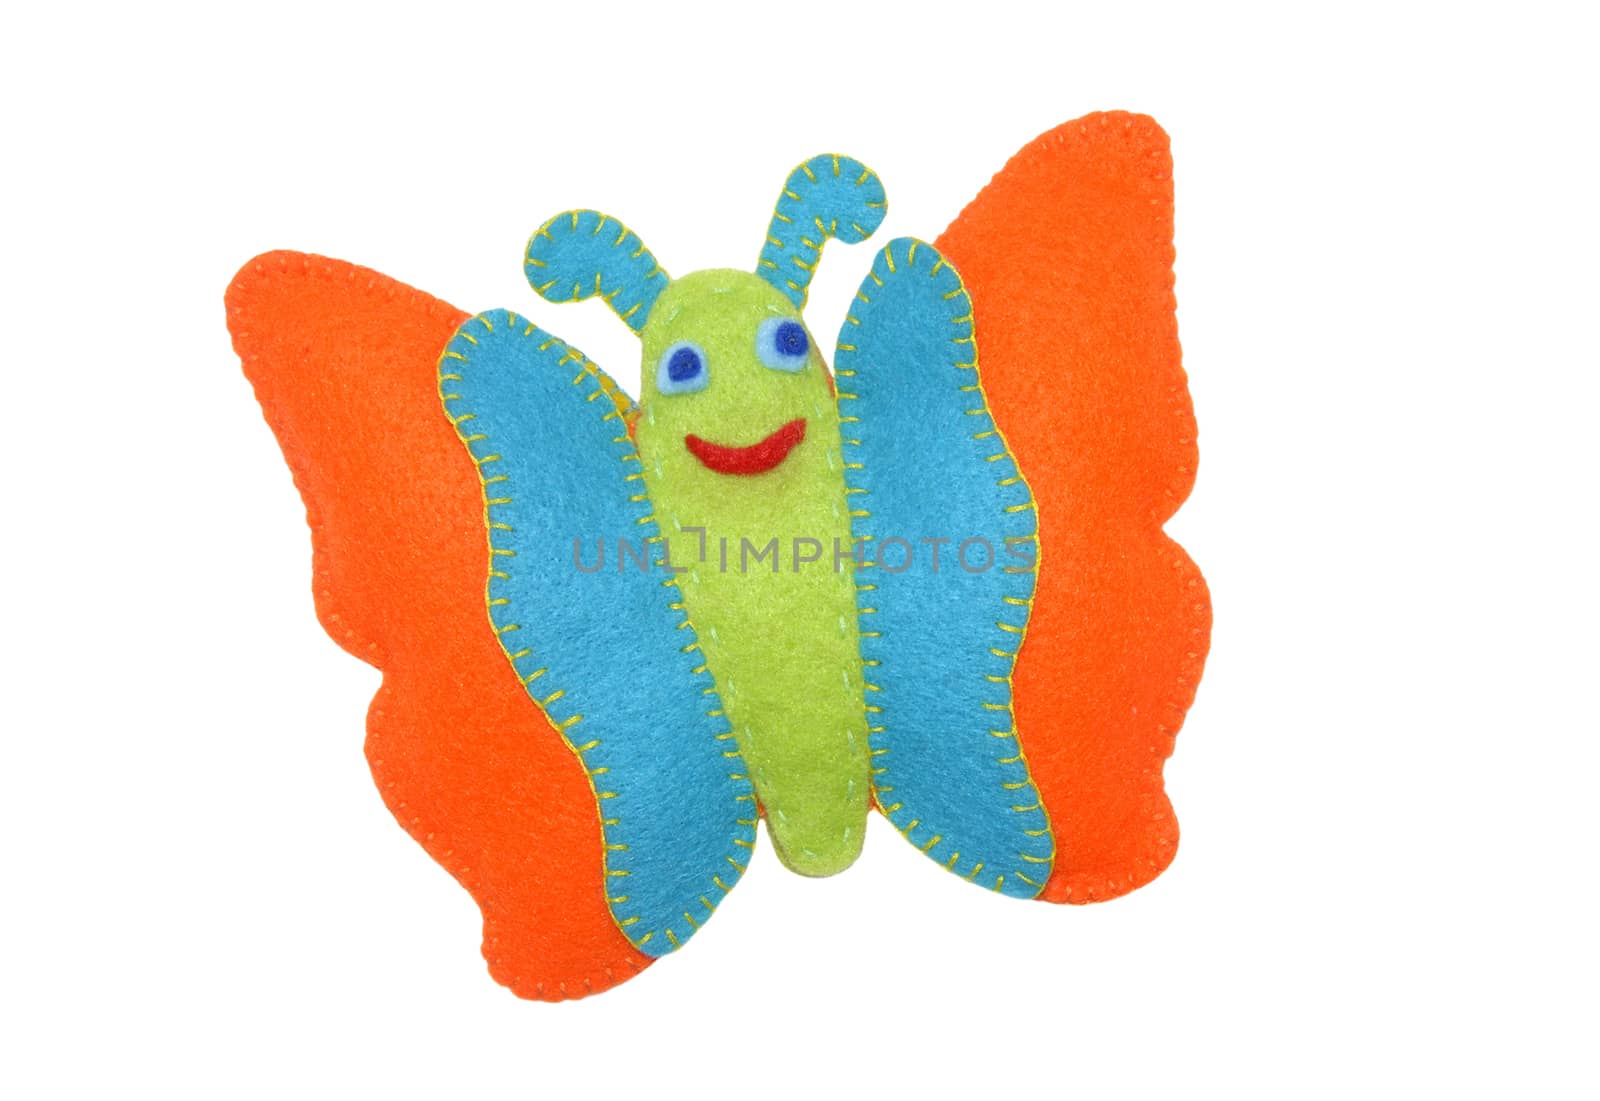 Butterfly - kids toys